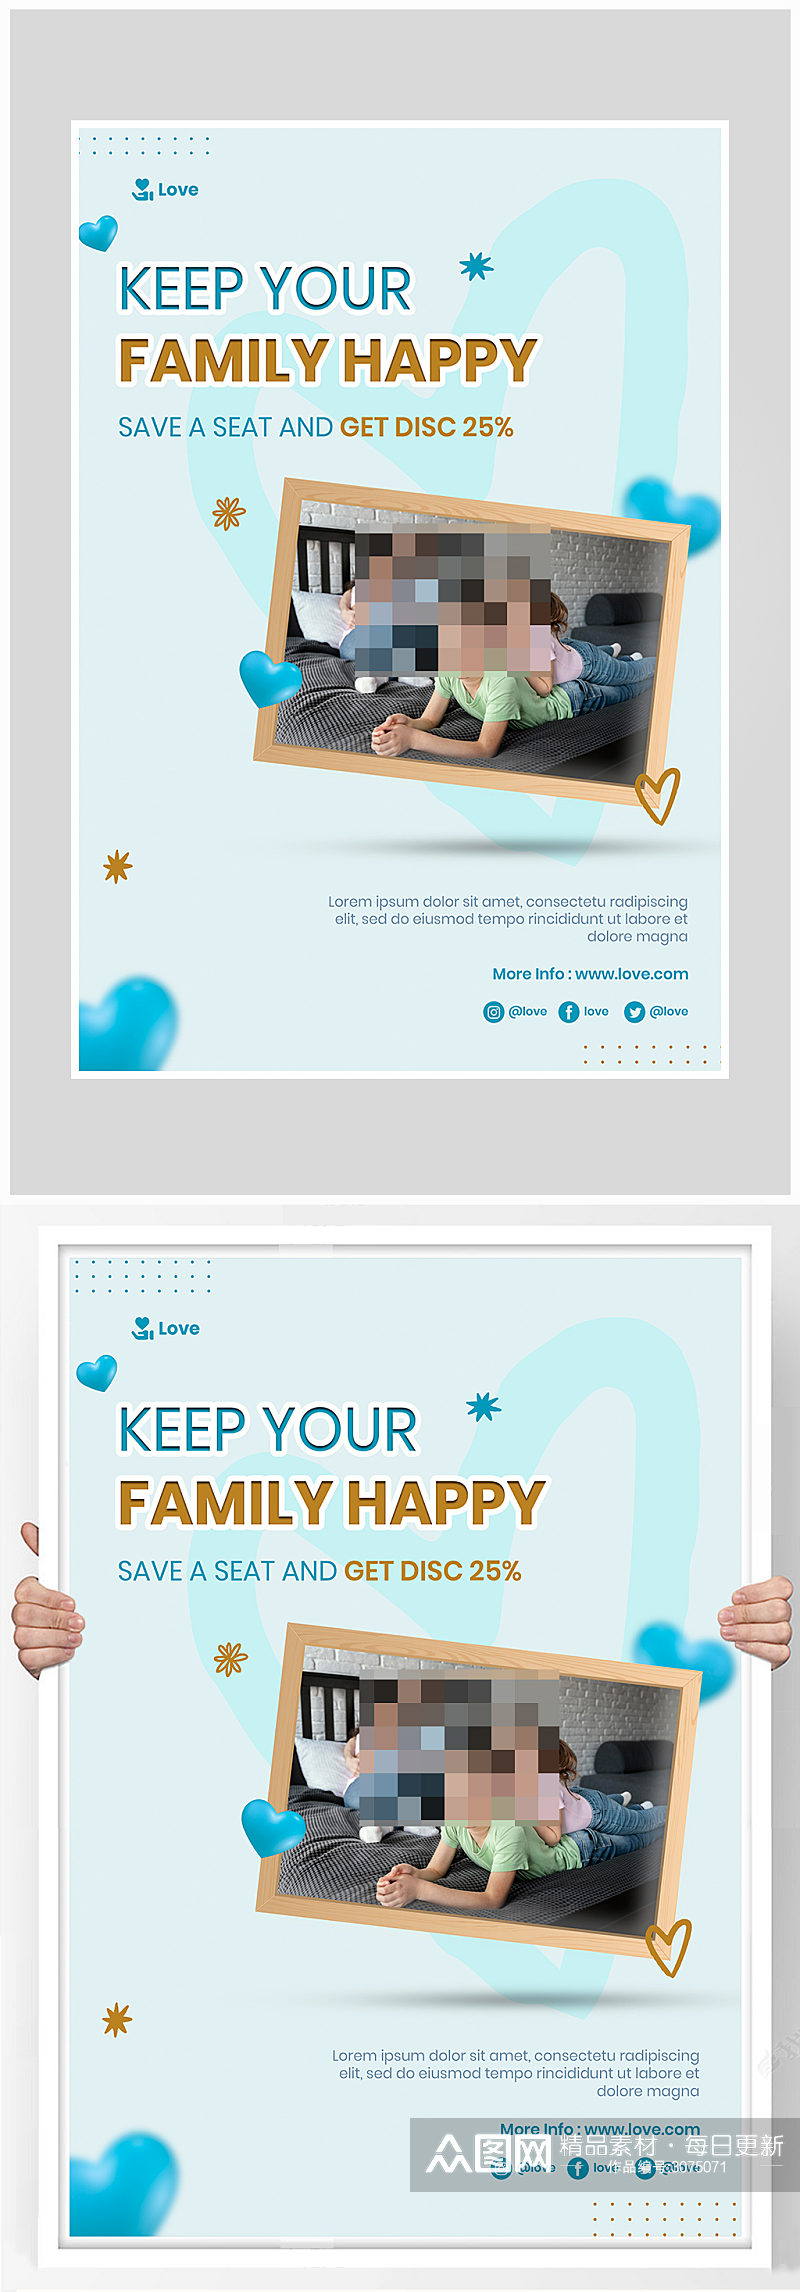 创意简约家庭活动娱乐海报设计素材